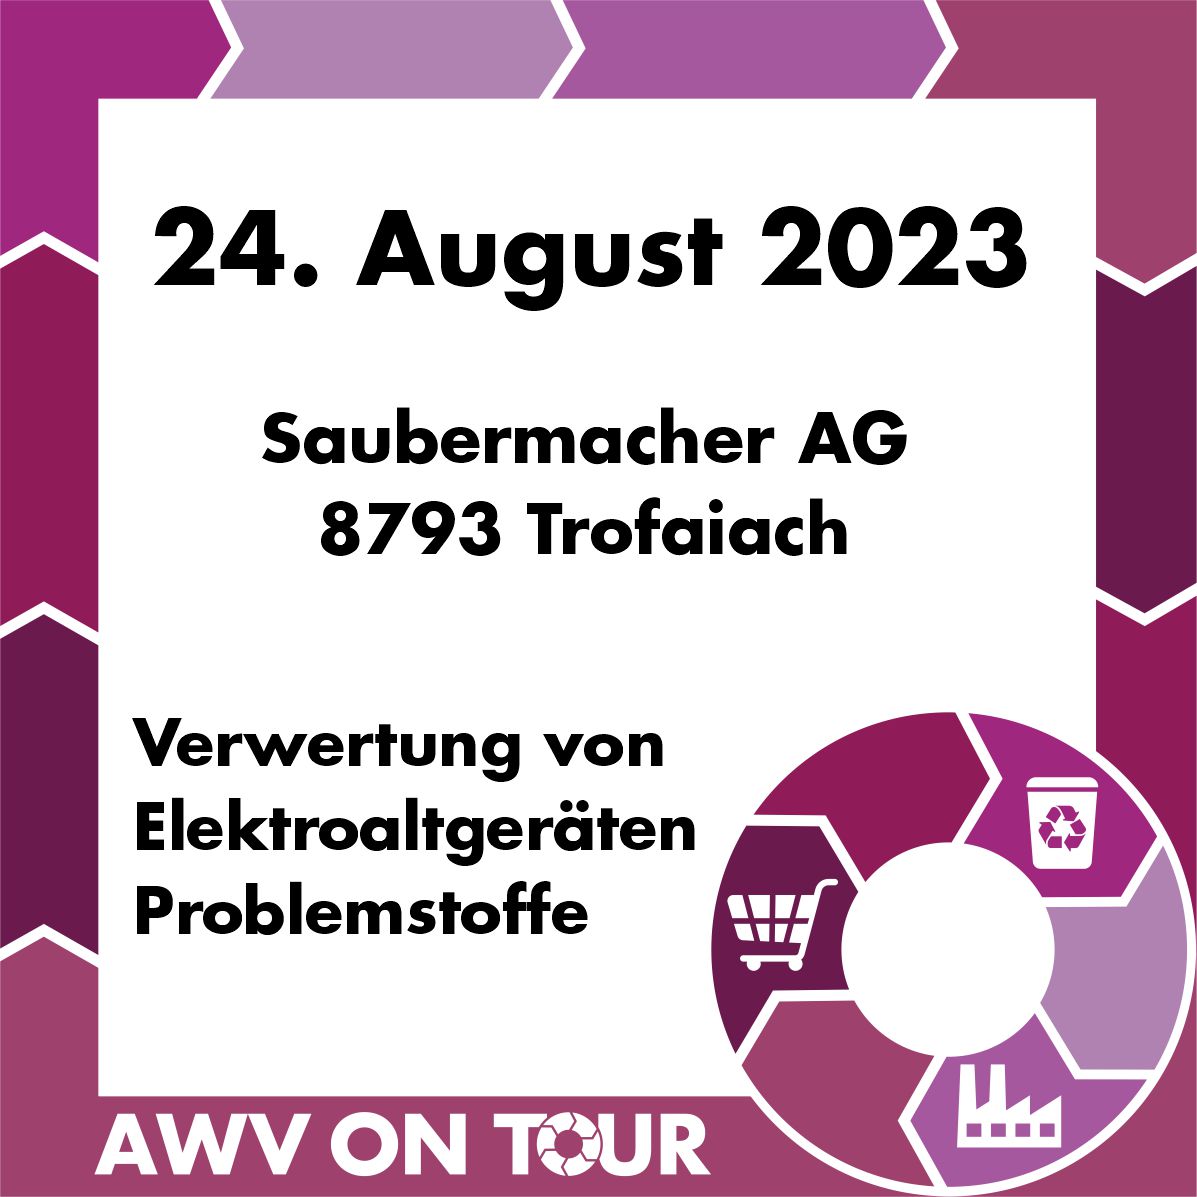 Der AWV Weiz geht ON TOUR - Saubermacher Trofaiach